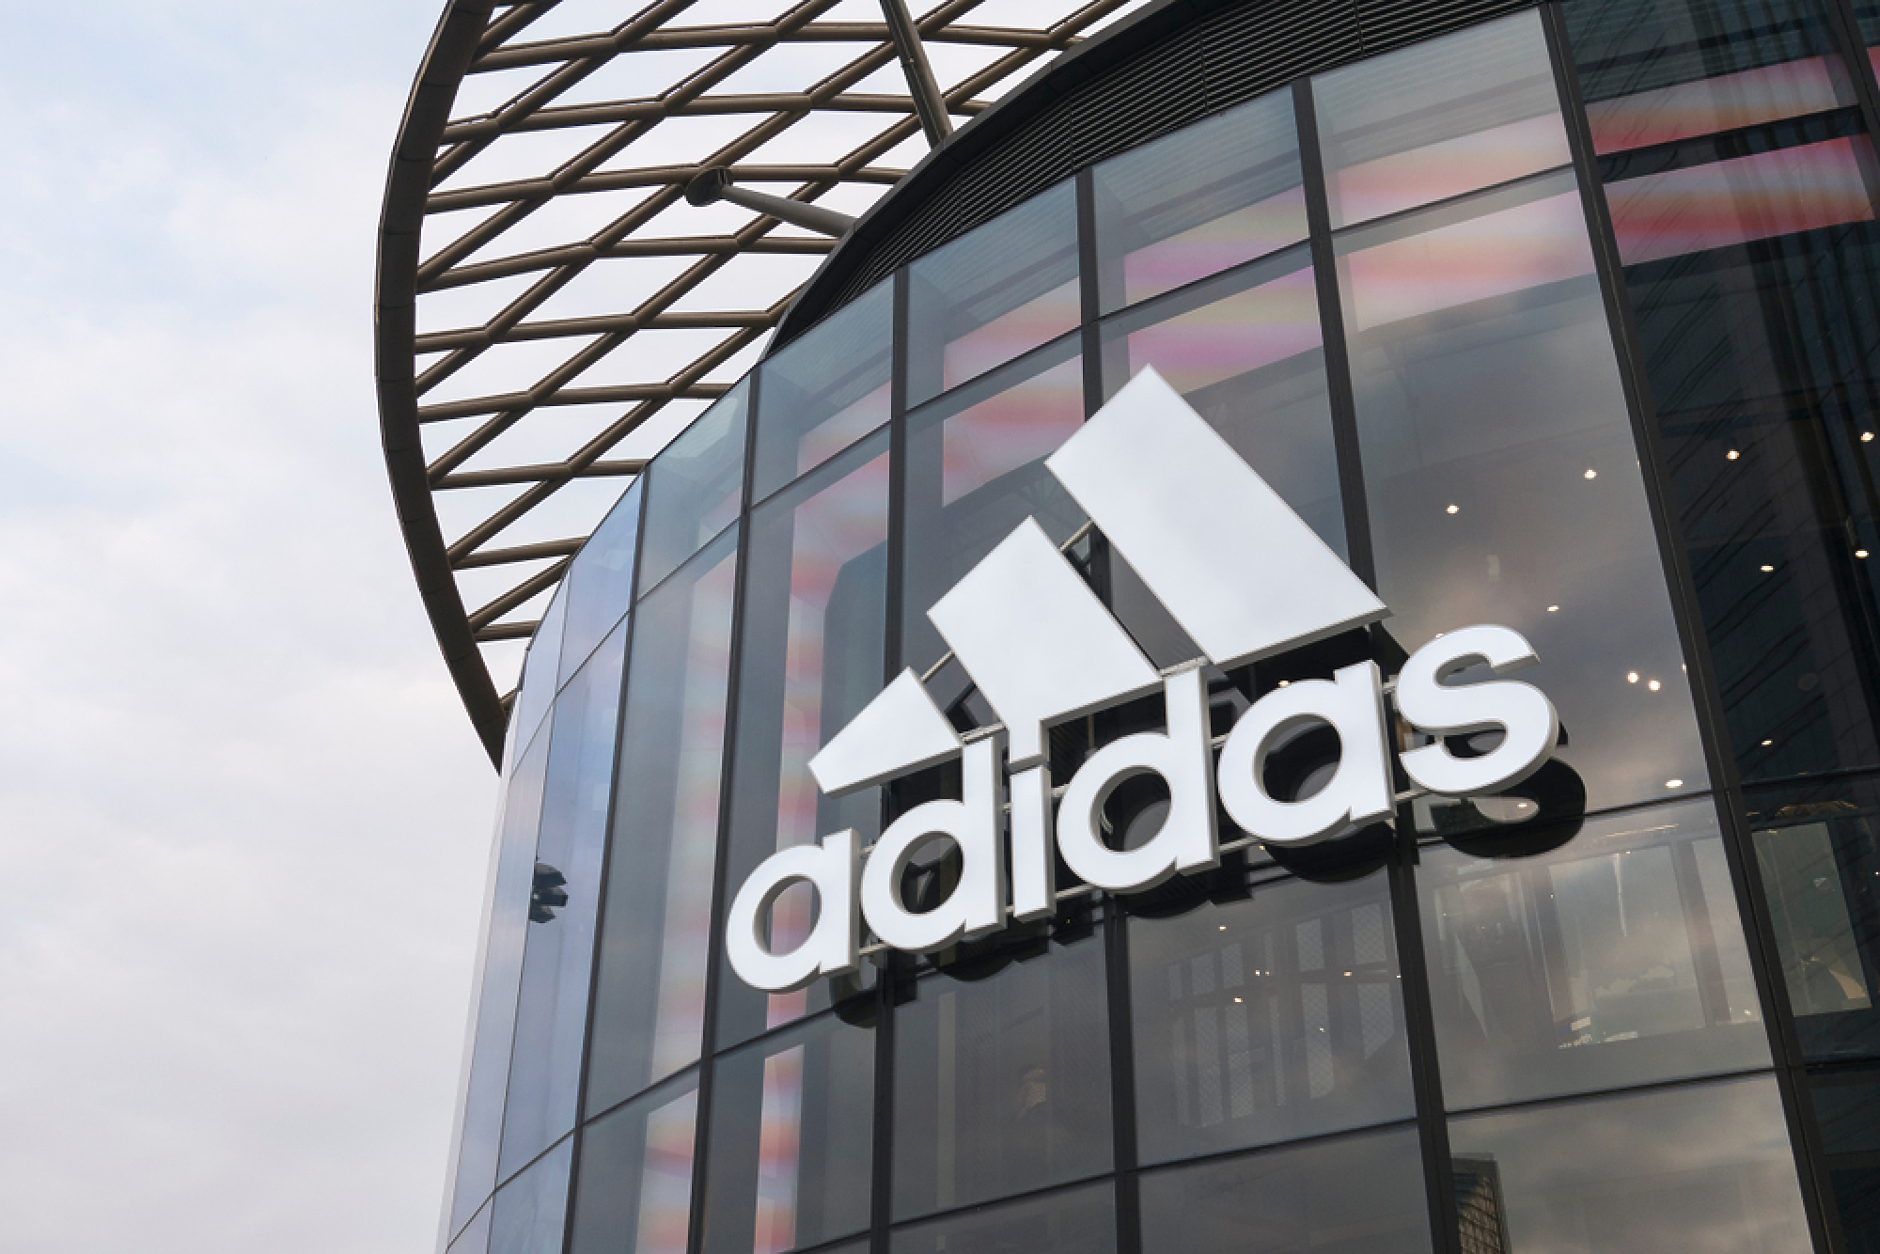 Adidas обмисля възможността за прехвърляне на подразделението си в Русия на друг инвеститор